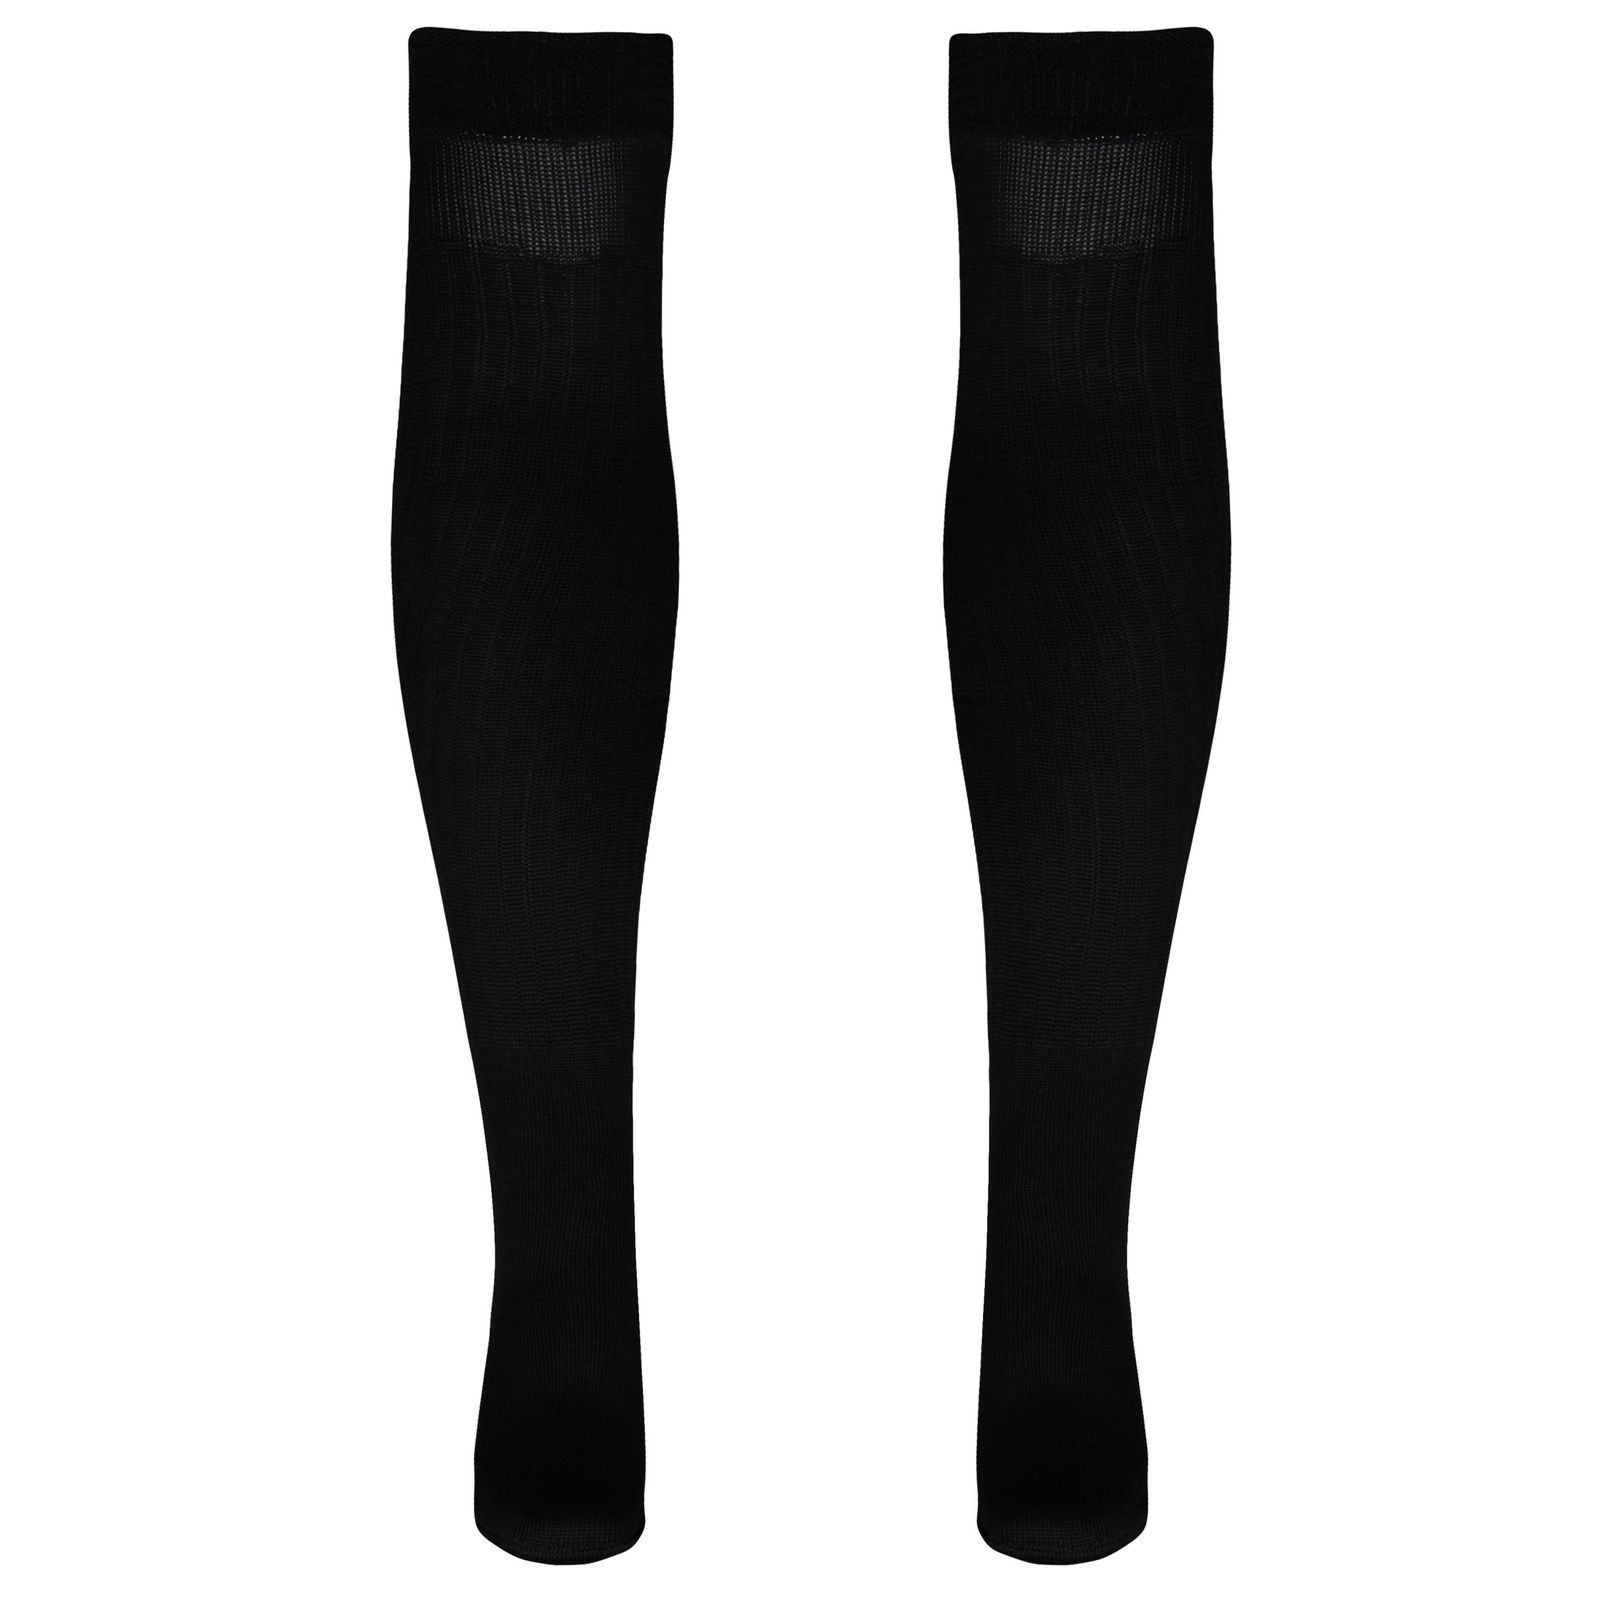 جوراب ورزشی ساق بلند مردانه ماییلدا مدل 4185 رنگ مشکی